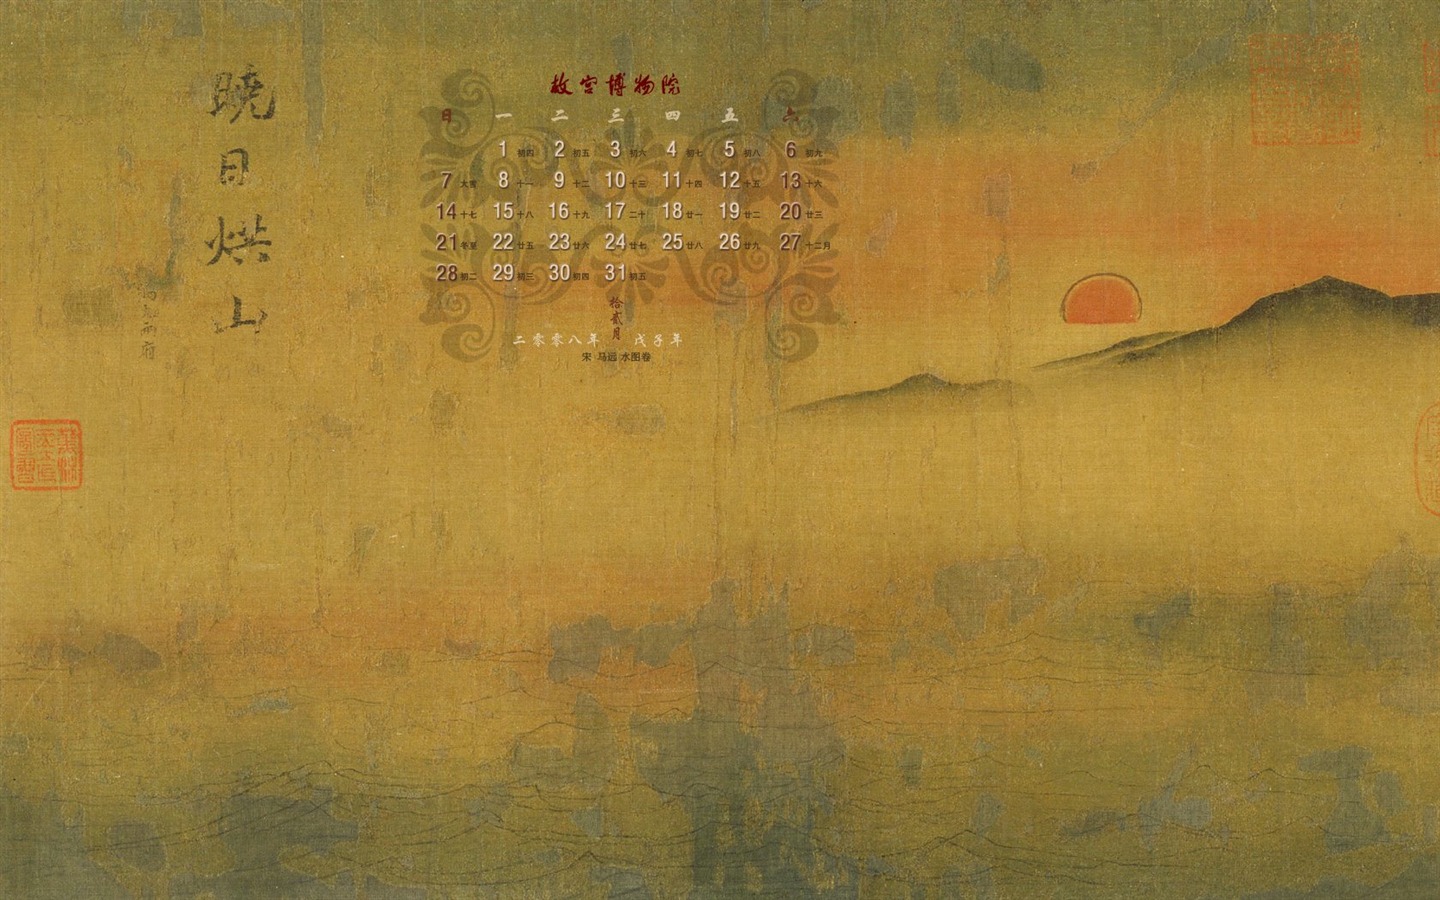 北京故宫博物院 文物展壁纸(二)27 - 1440x900